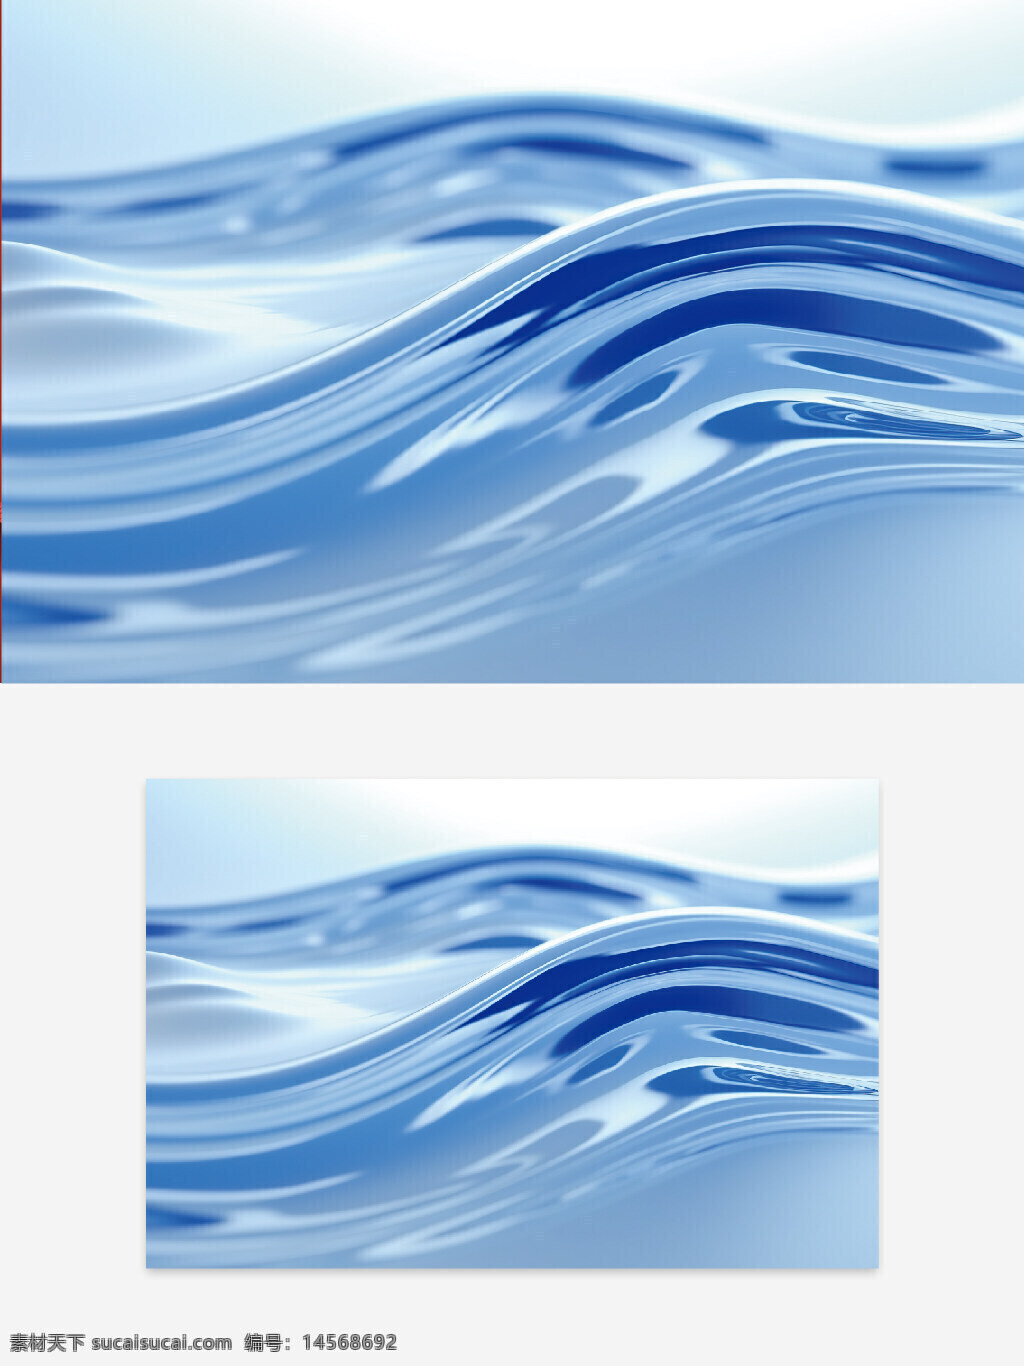 创意夏天。水波背景 背景设计。背景创意。 夏天背景。背景创意 夏天背景创意。蓝色水波 水纹设计 水纹纹理